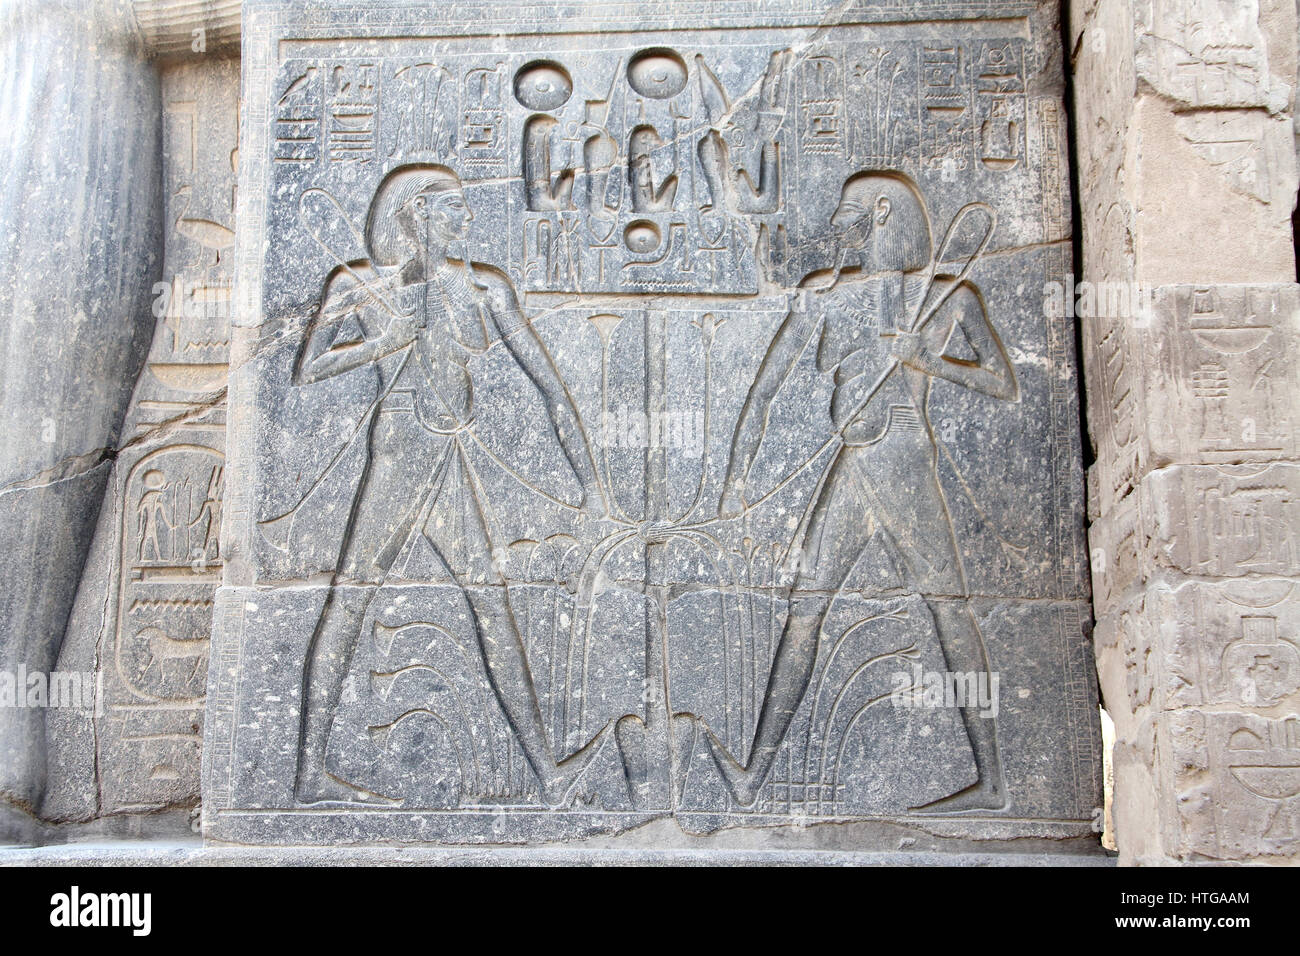 Relief sur la base de la statue assise de Ramsès le Grand Temple de Louxor qui symbolise l'union de la haute et de la Basse-Égypte Banque D'Images